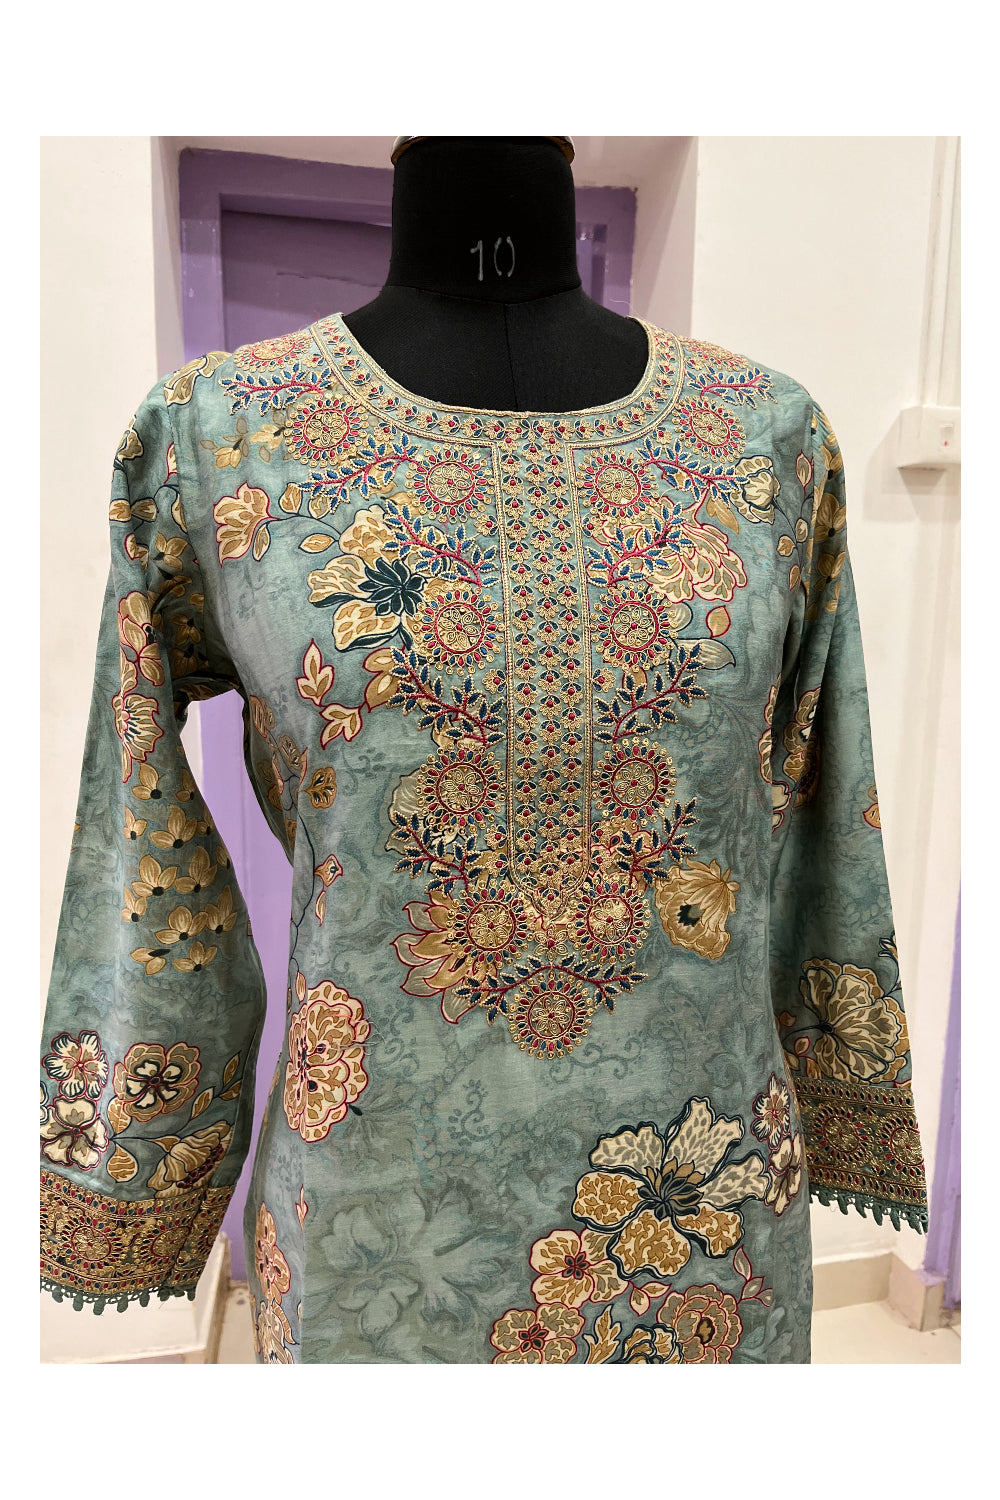 Southloom Stitched Semi Silk Blue Salwar Set with Heavy Thread Works in Yoke